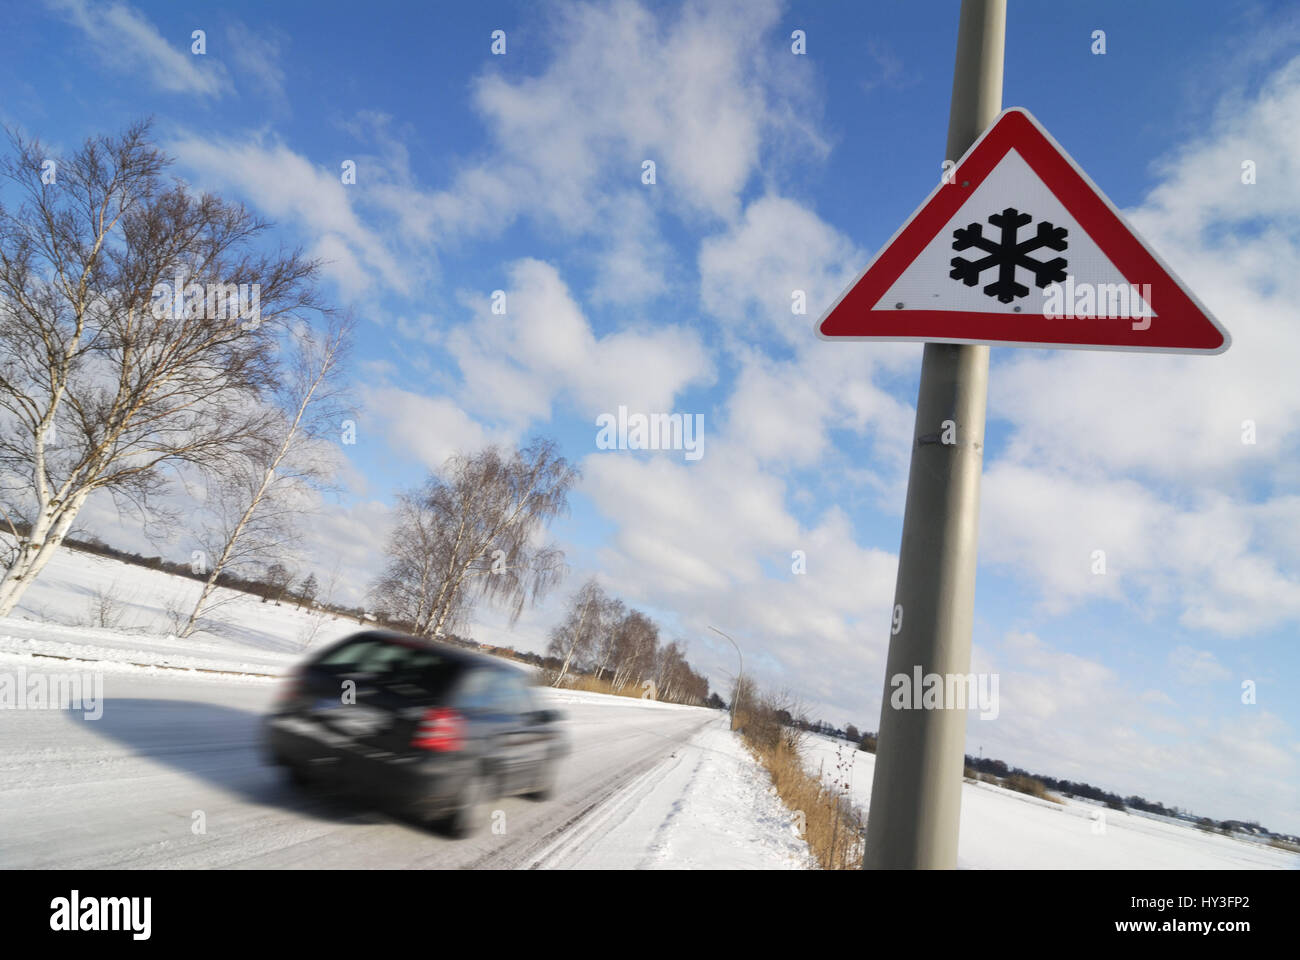 Achtung Schnee Glatteis Gefahr mit Auto Rutschen Stock Vector